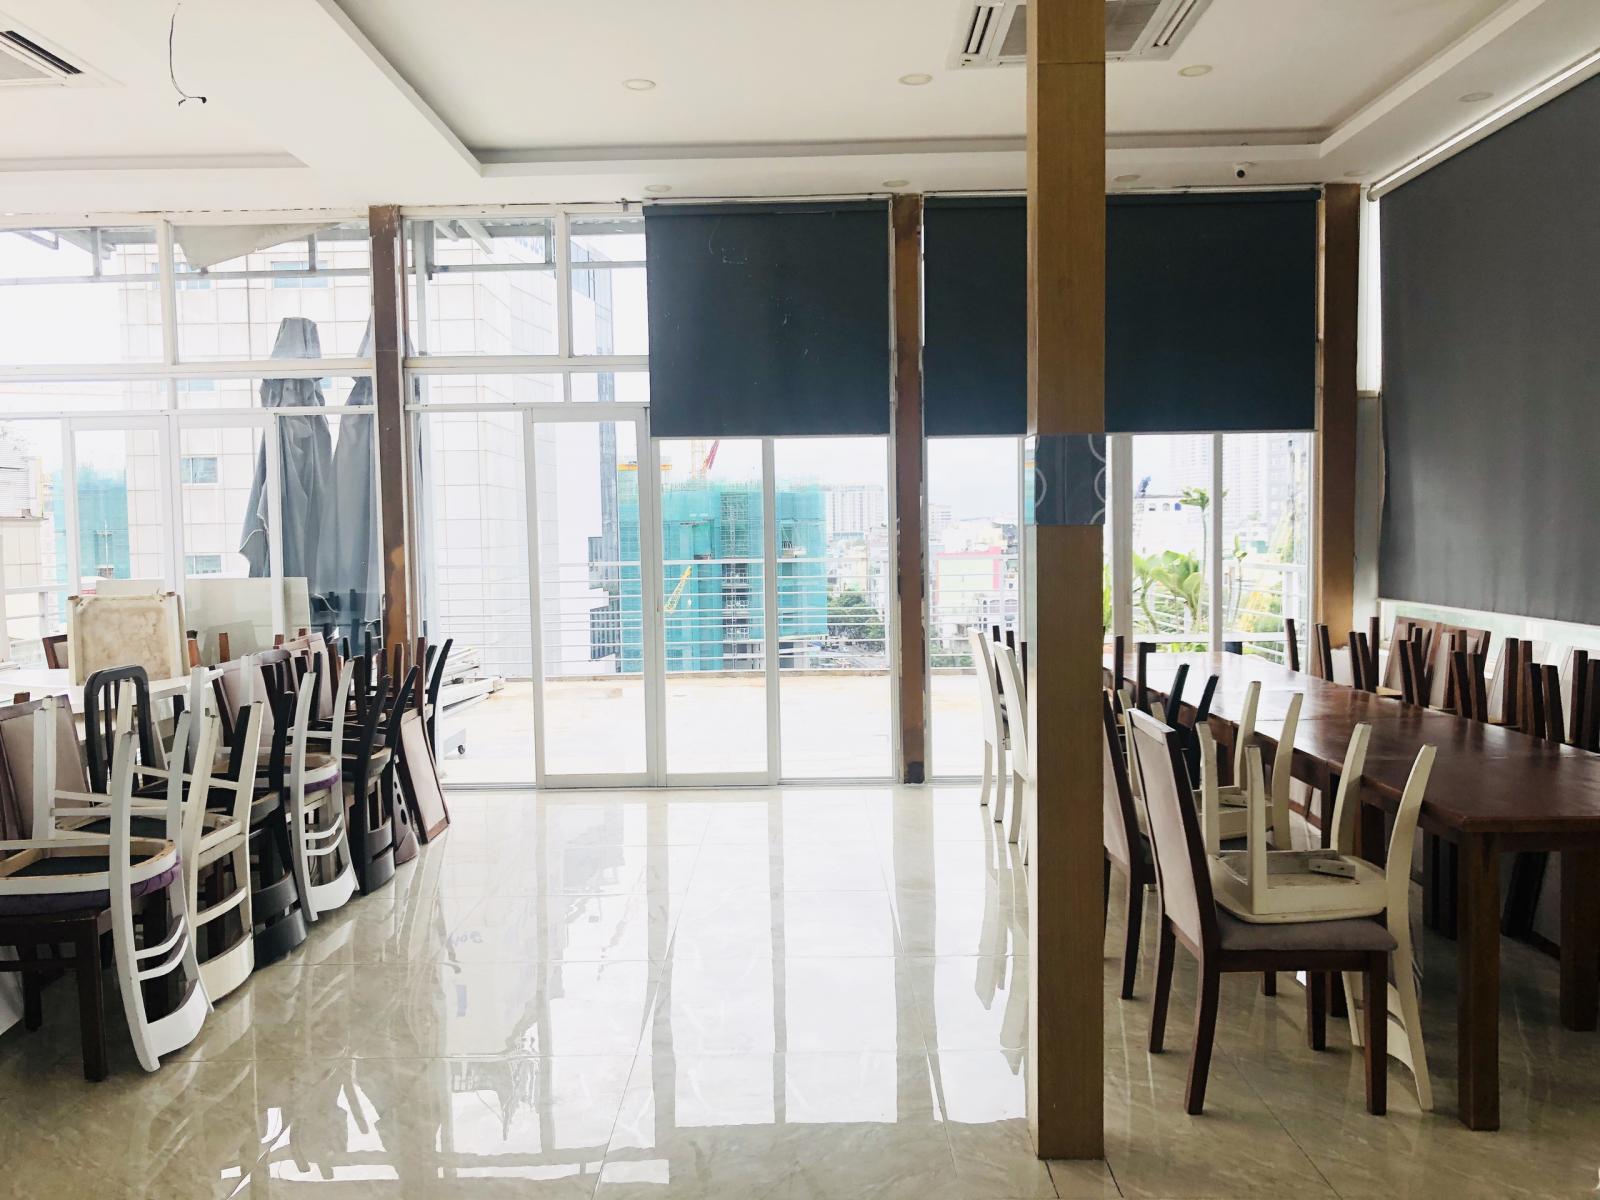 Cho thuê MB sân thượng tiện kinh doanh nhà hàng, cafe, lounge ở MT đường Nguyễn An Ninh, Phường Bến Thành, quận 1.